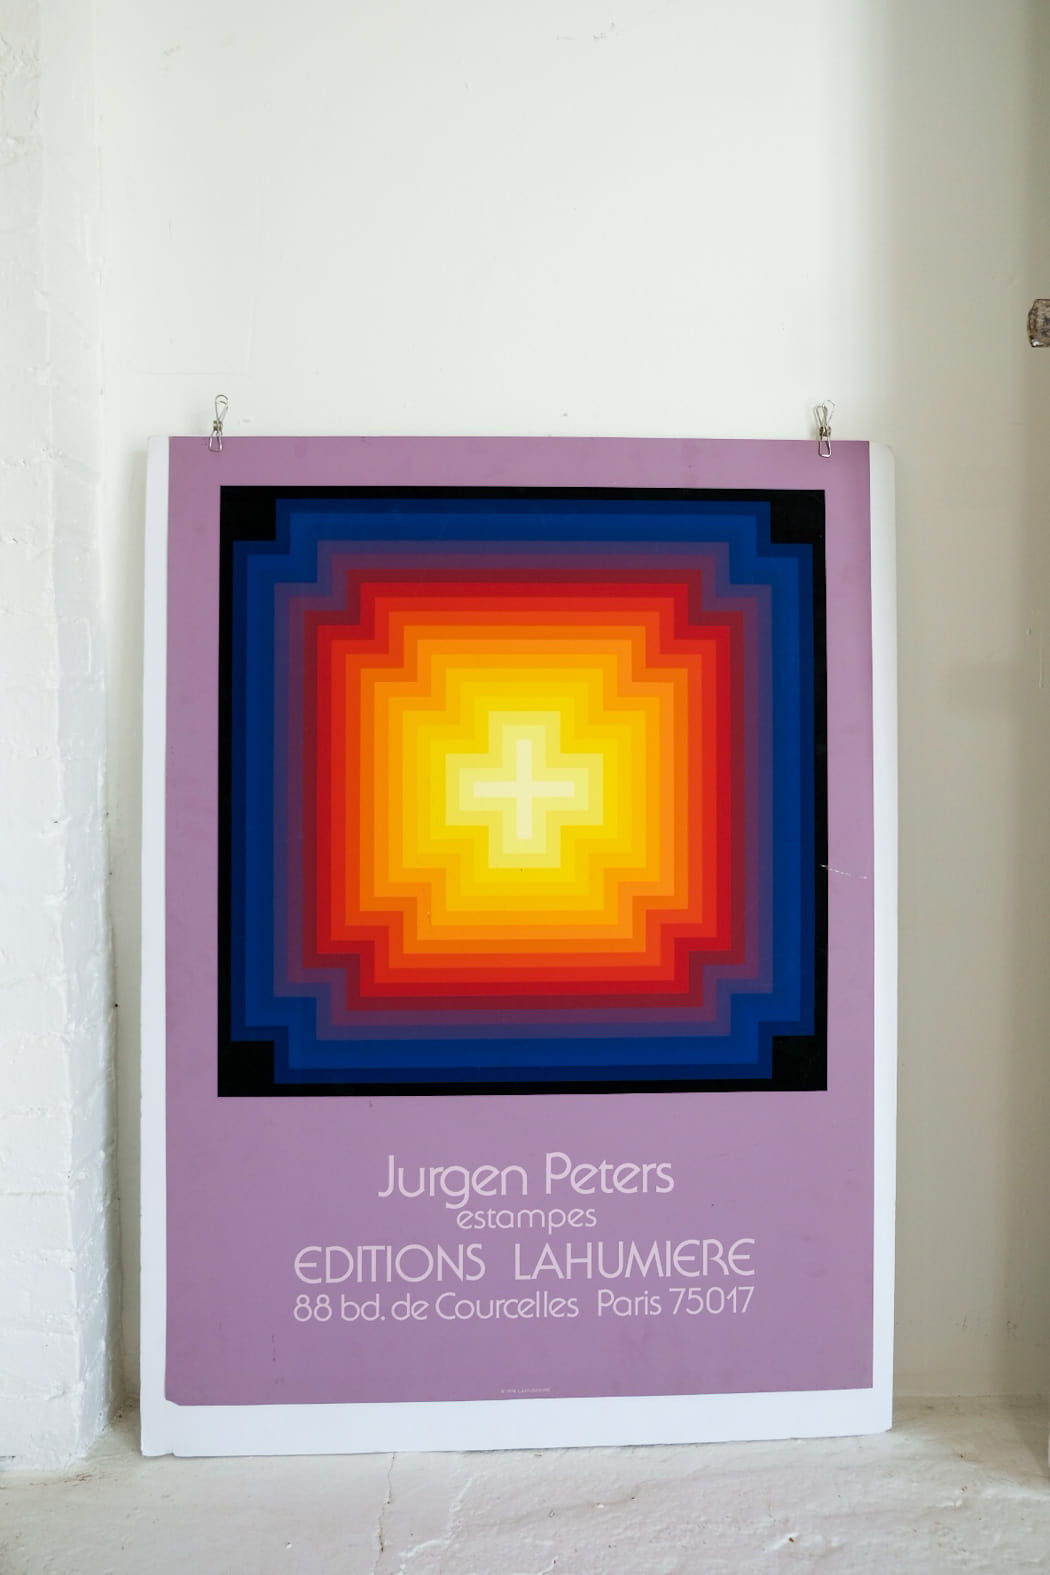 Jurgen Peters Editions Lahumiere Paris 1974